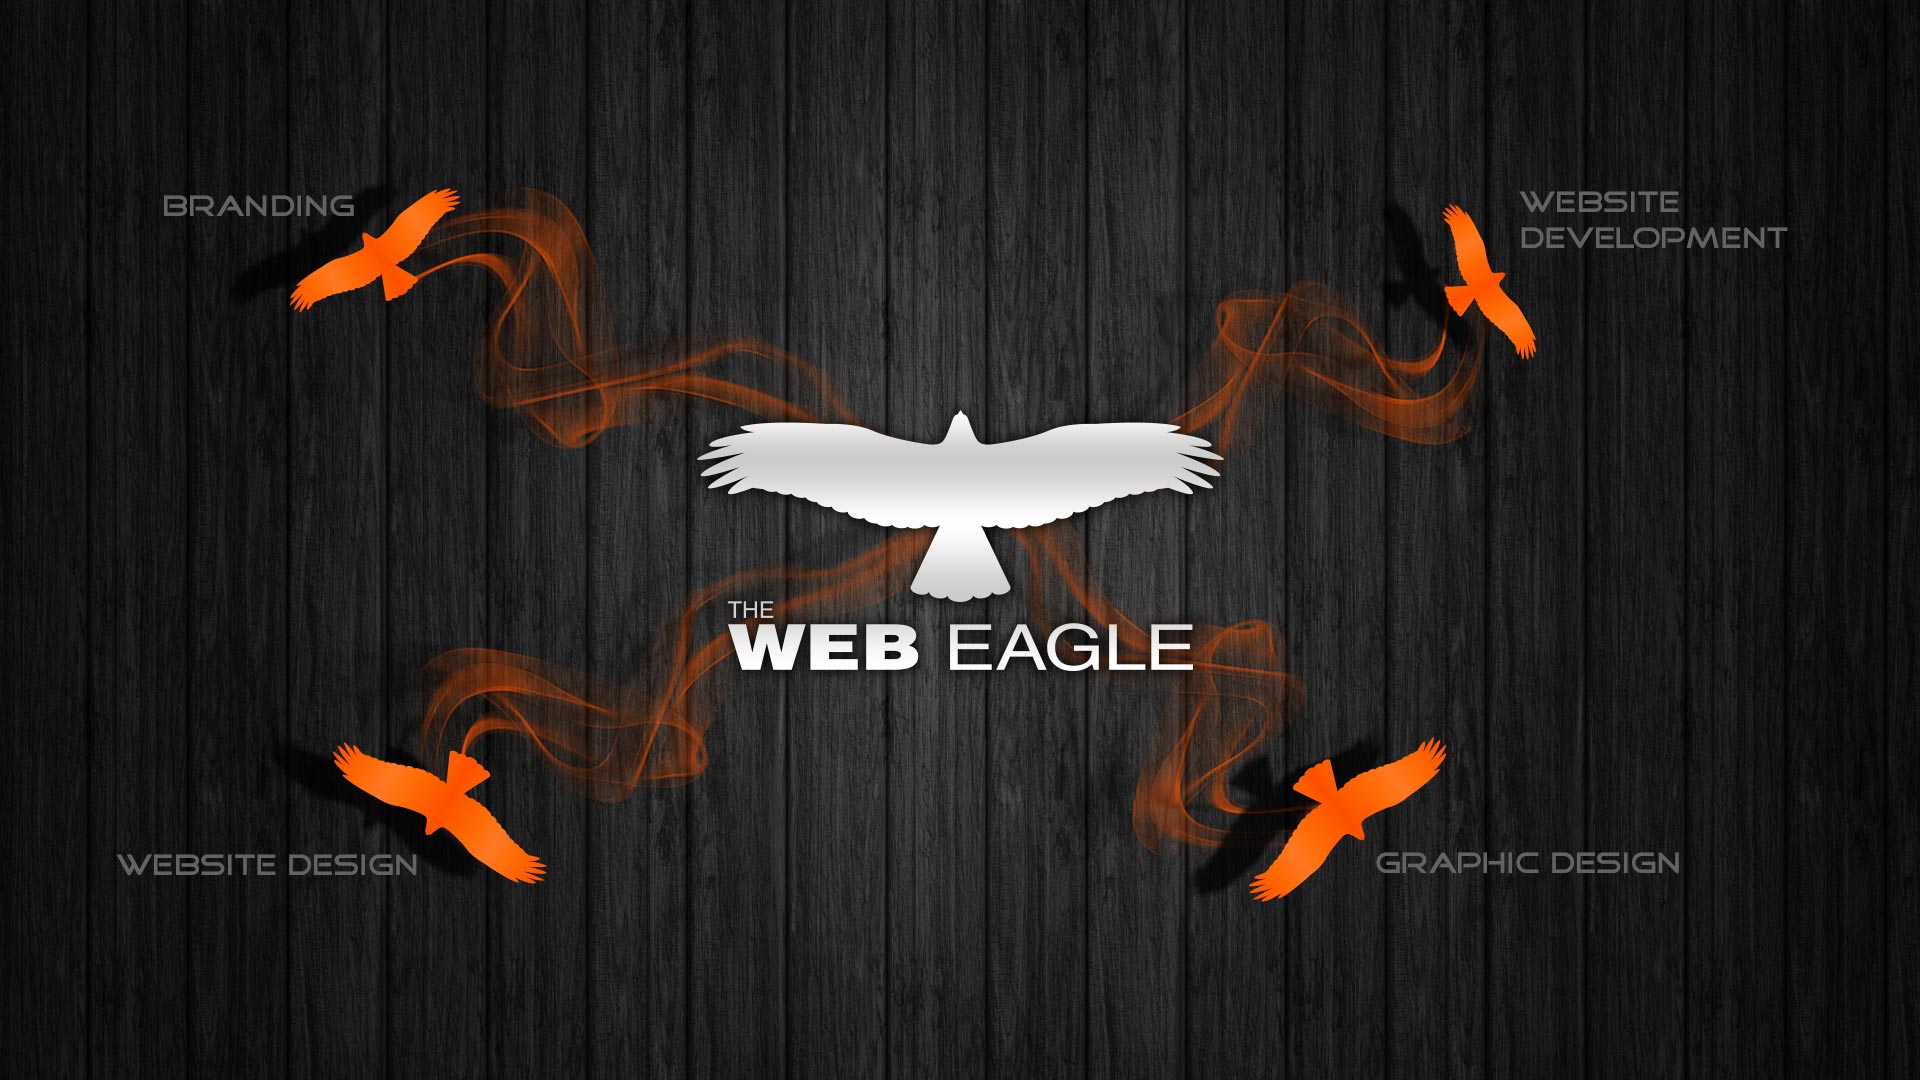 The Web Eagle